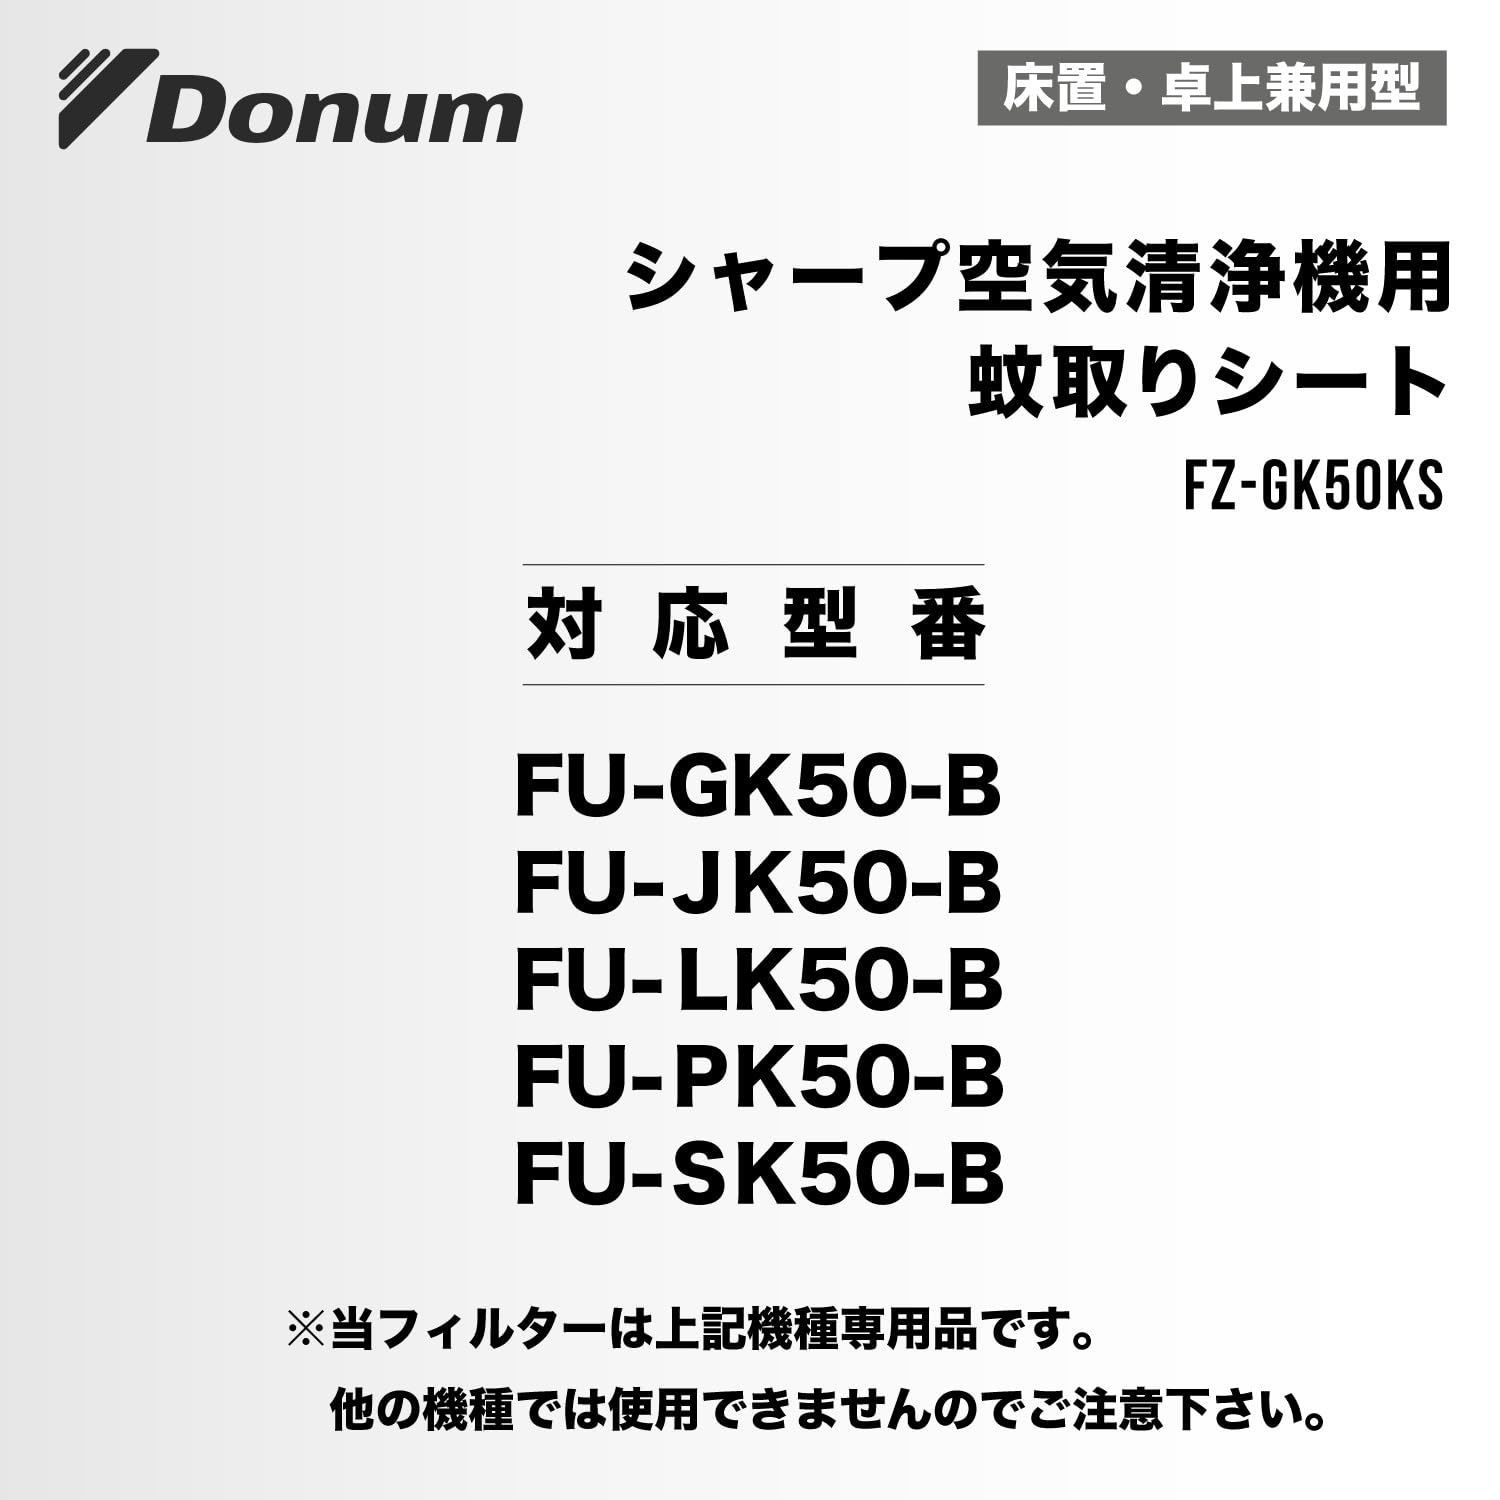 特価商品】FU-SK50 フィルター FU-PK50 空気清浄機 FU-GK50 fz-gk50ks